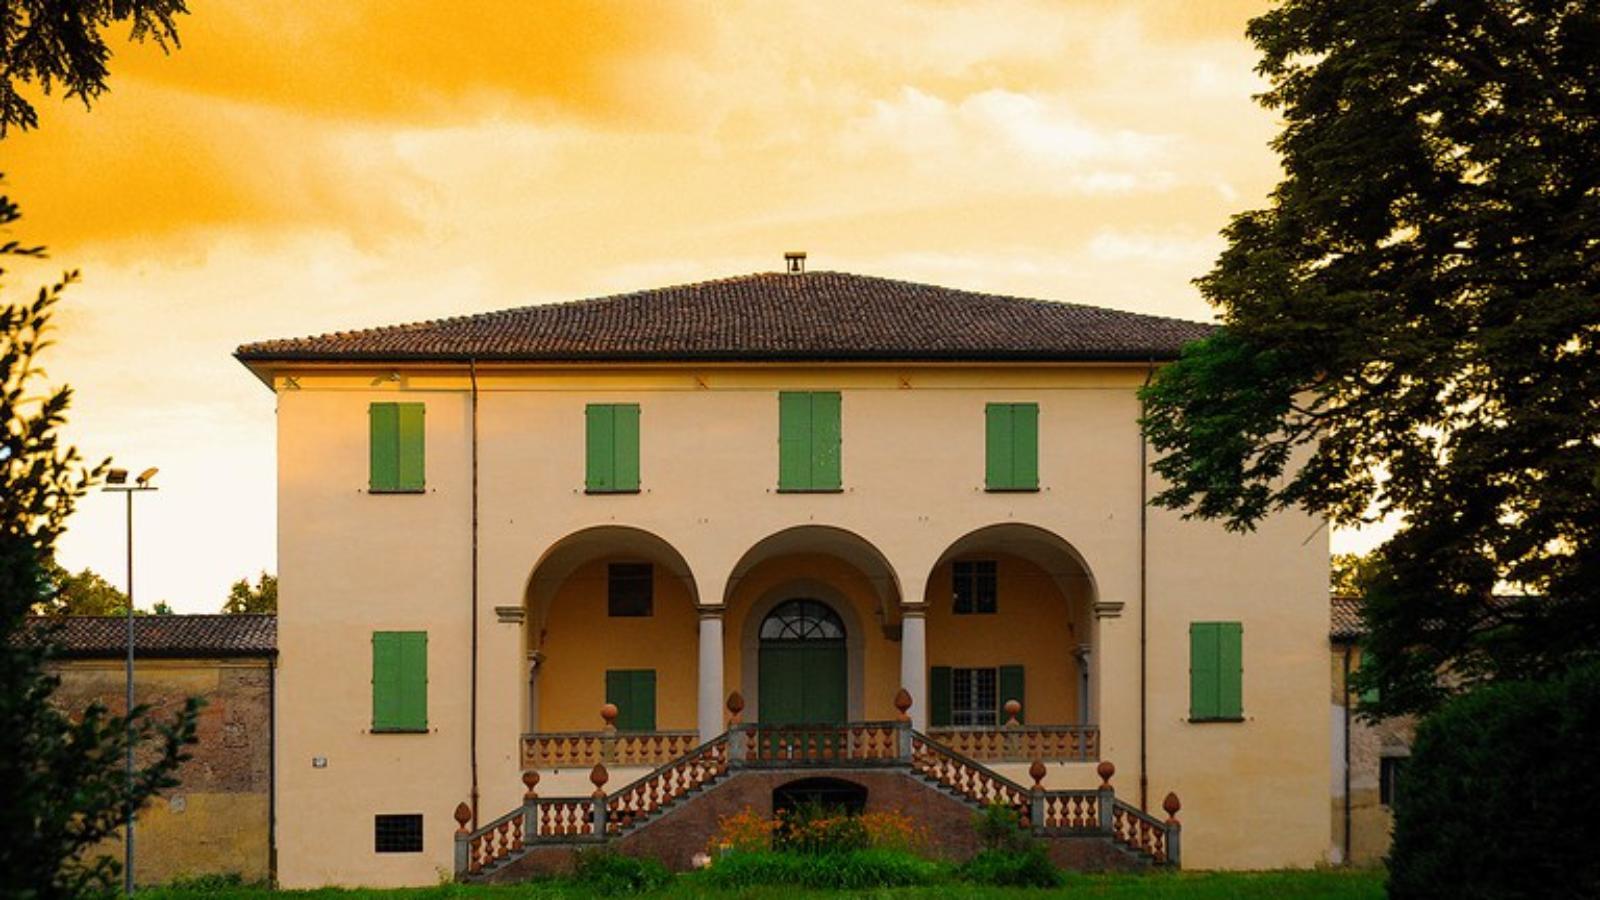 Argelato - Villa Beatrice e Quadreria